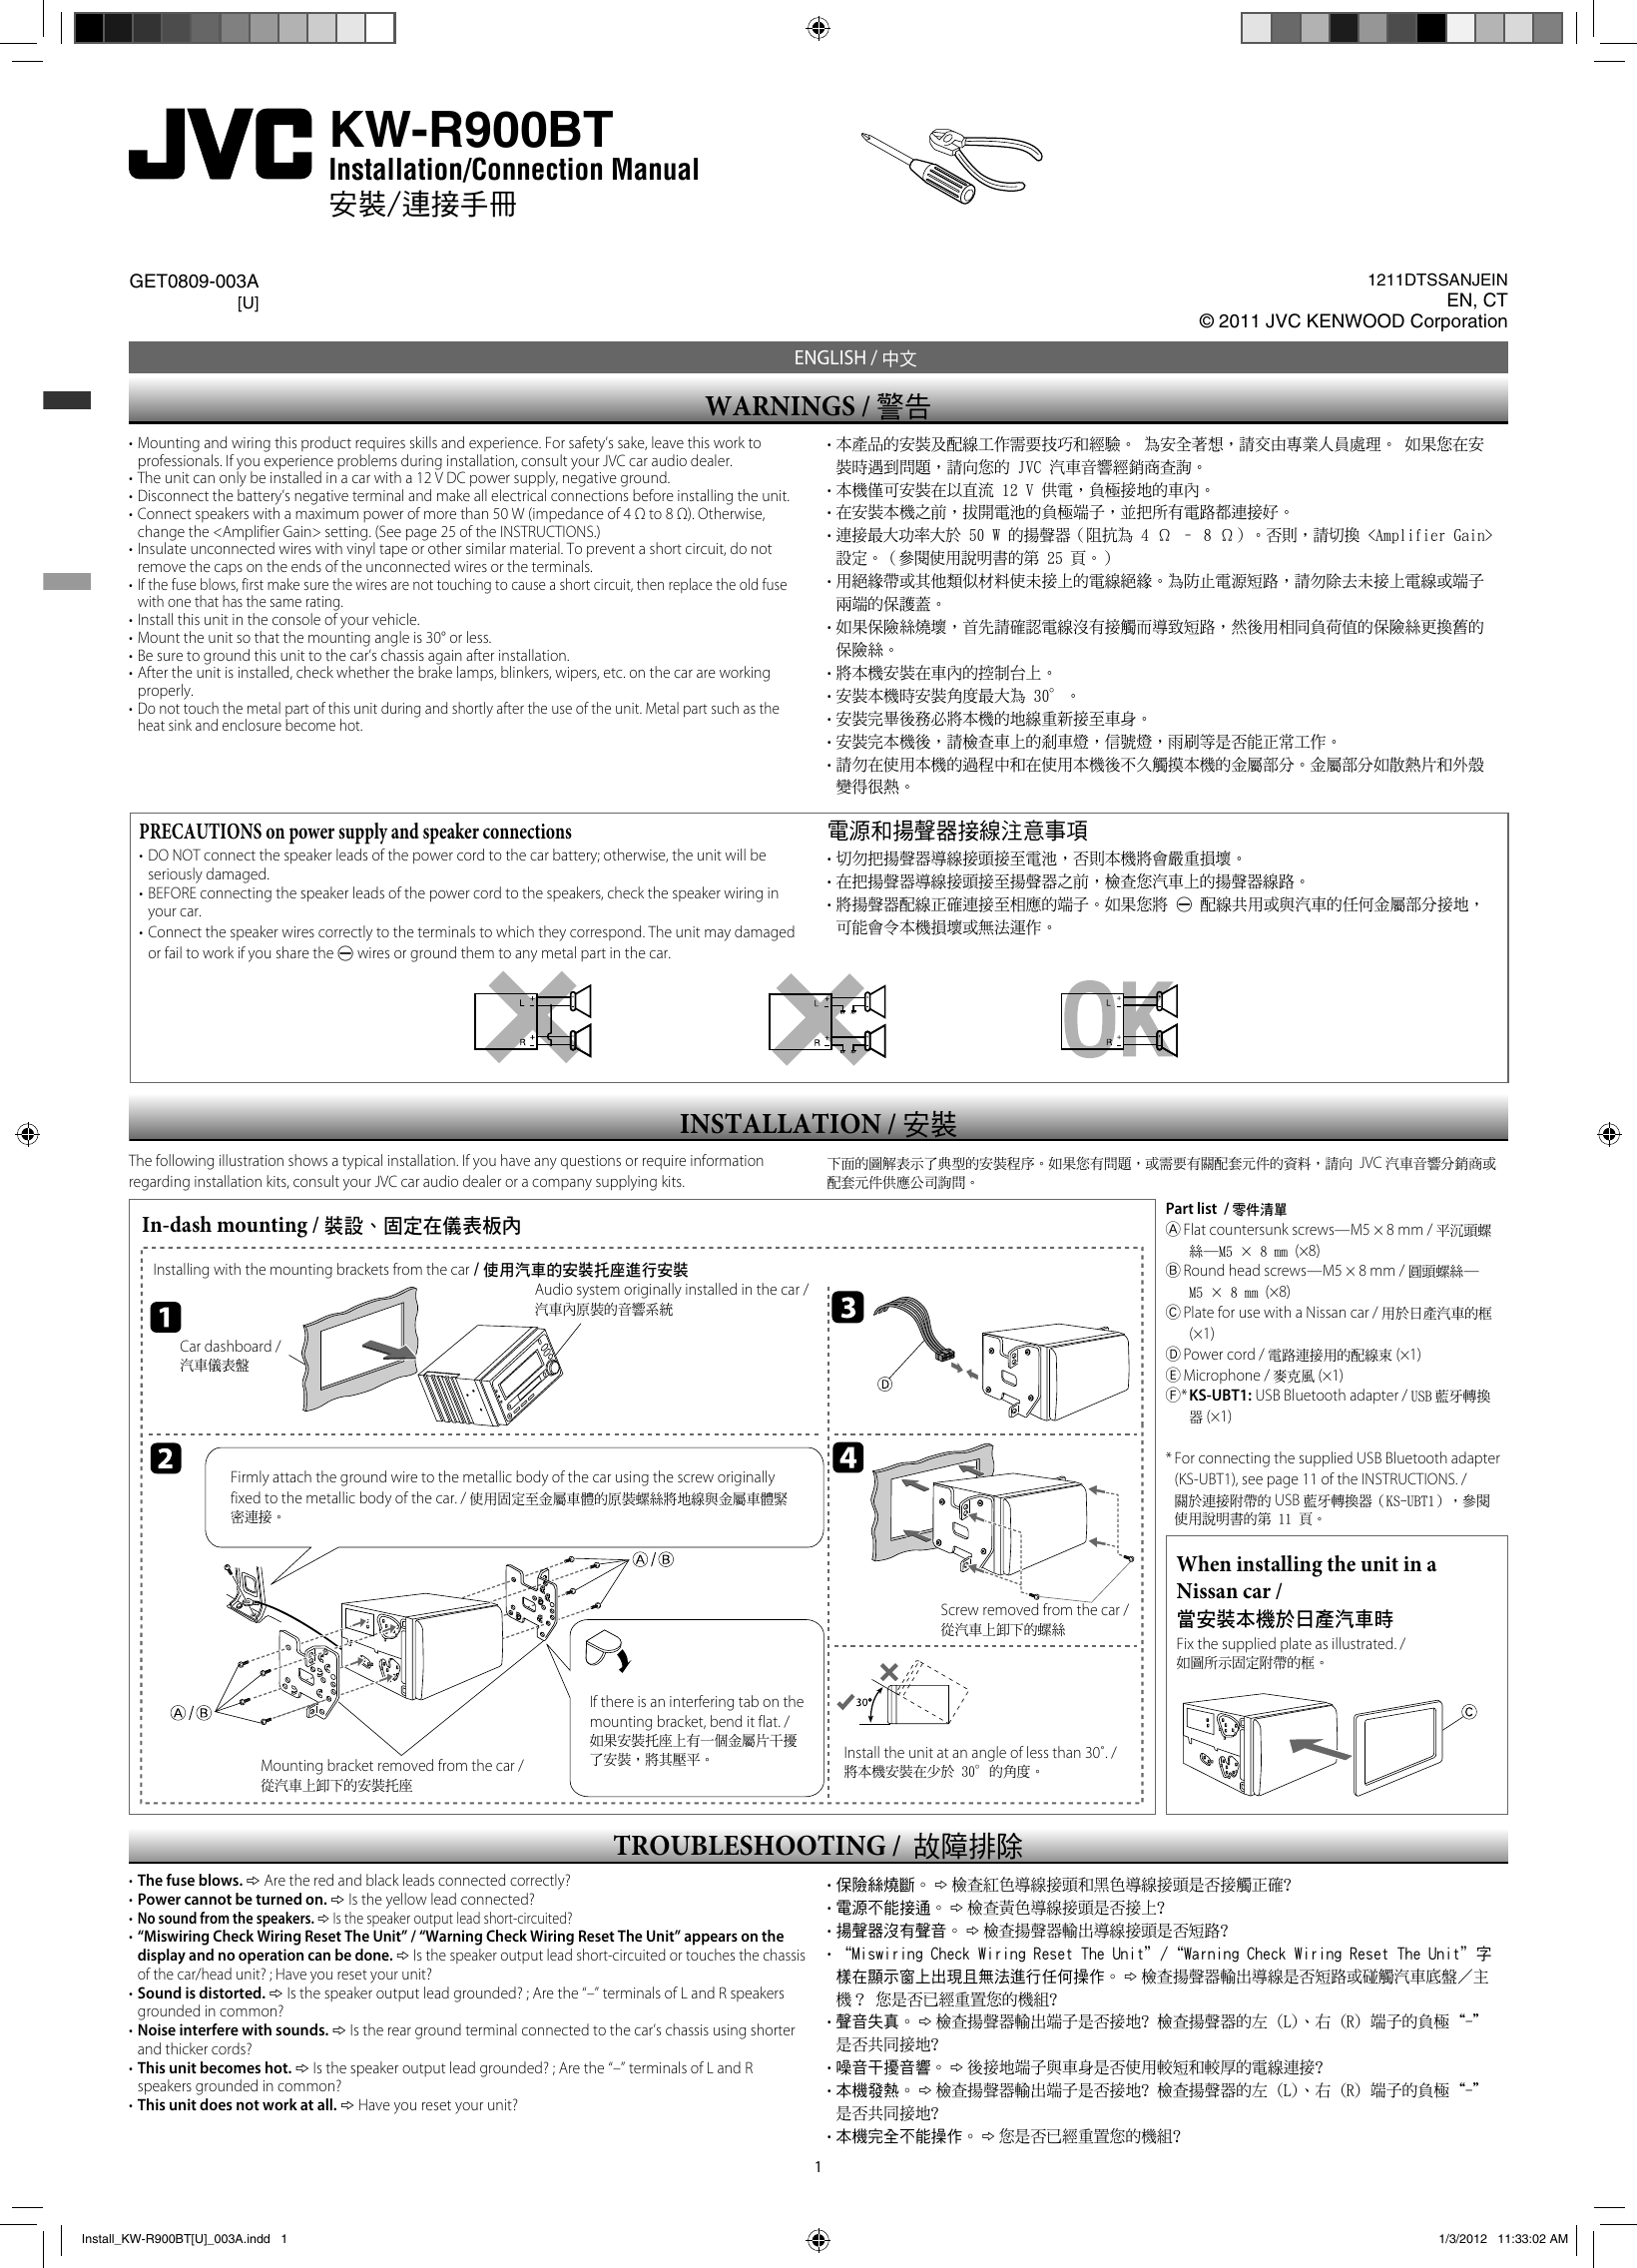 Page 1 of 2 - JVC KW-R900BTU KW-R900BT User Manual GET0809-003A